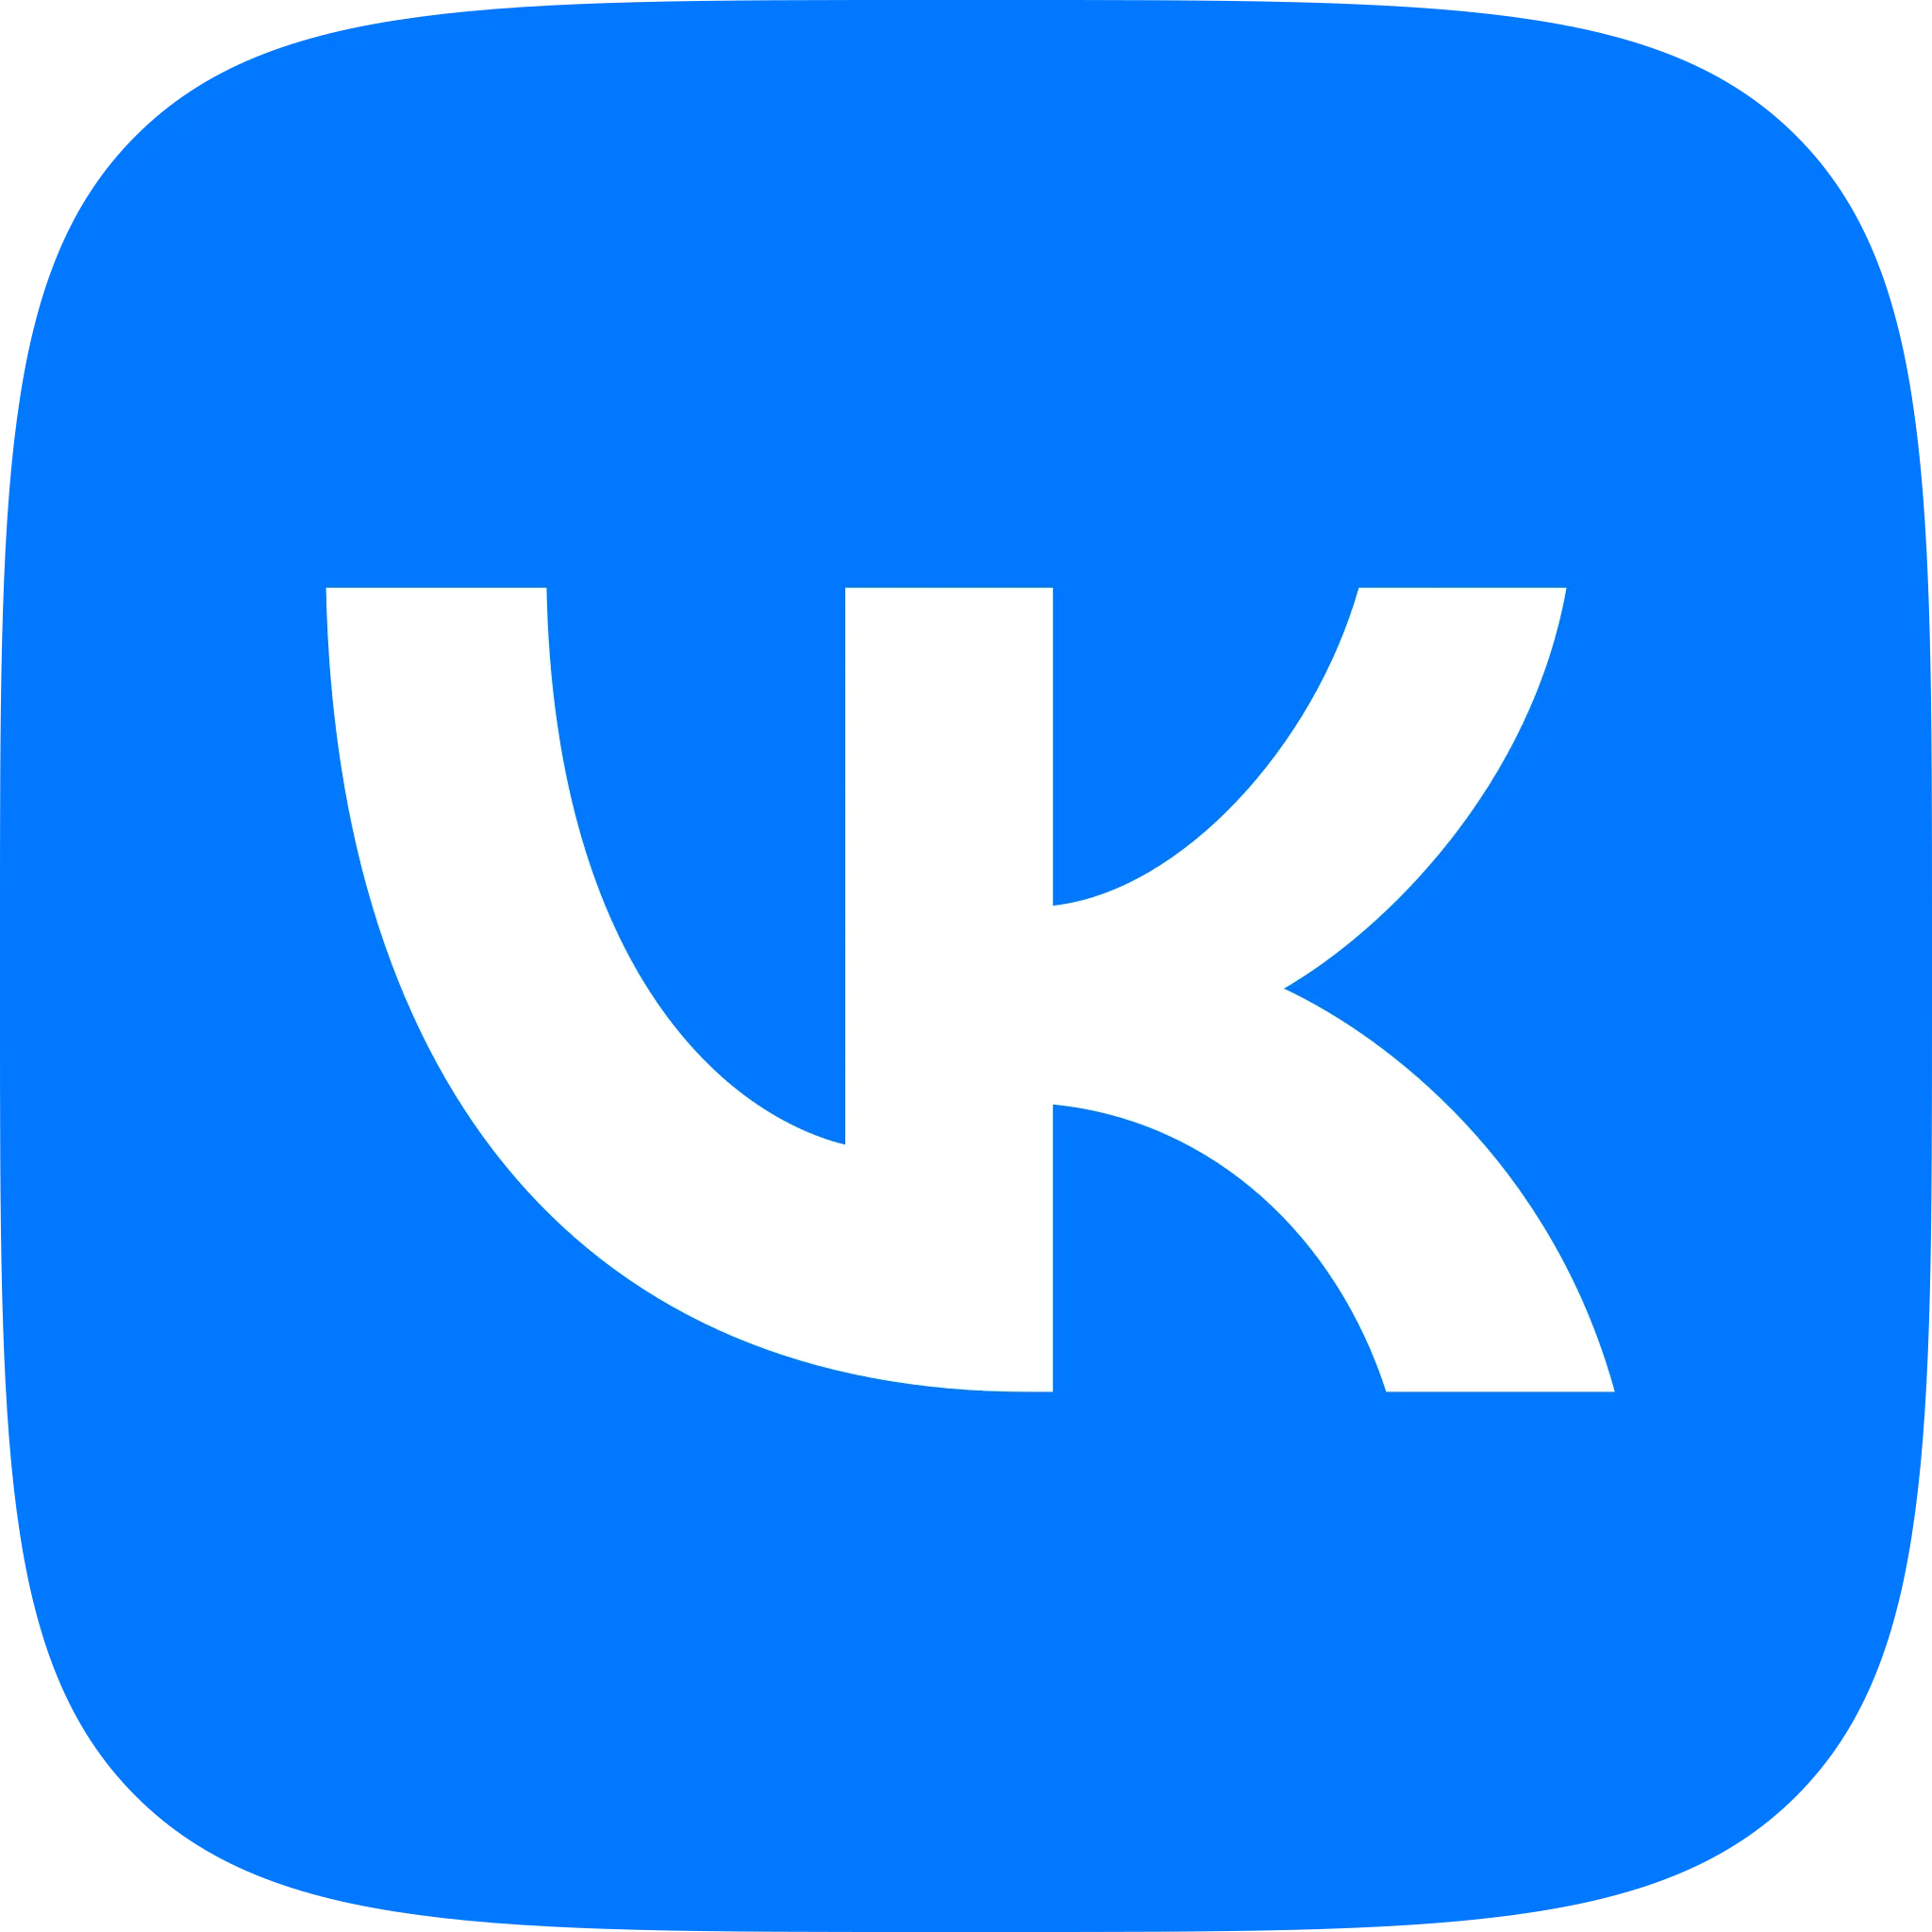 VK logo.webp